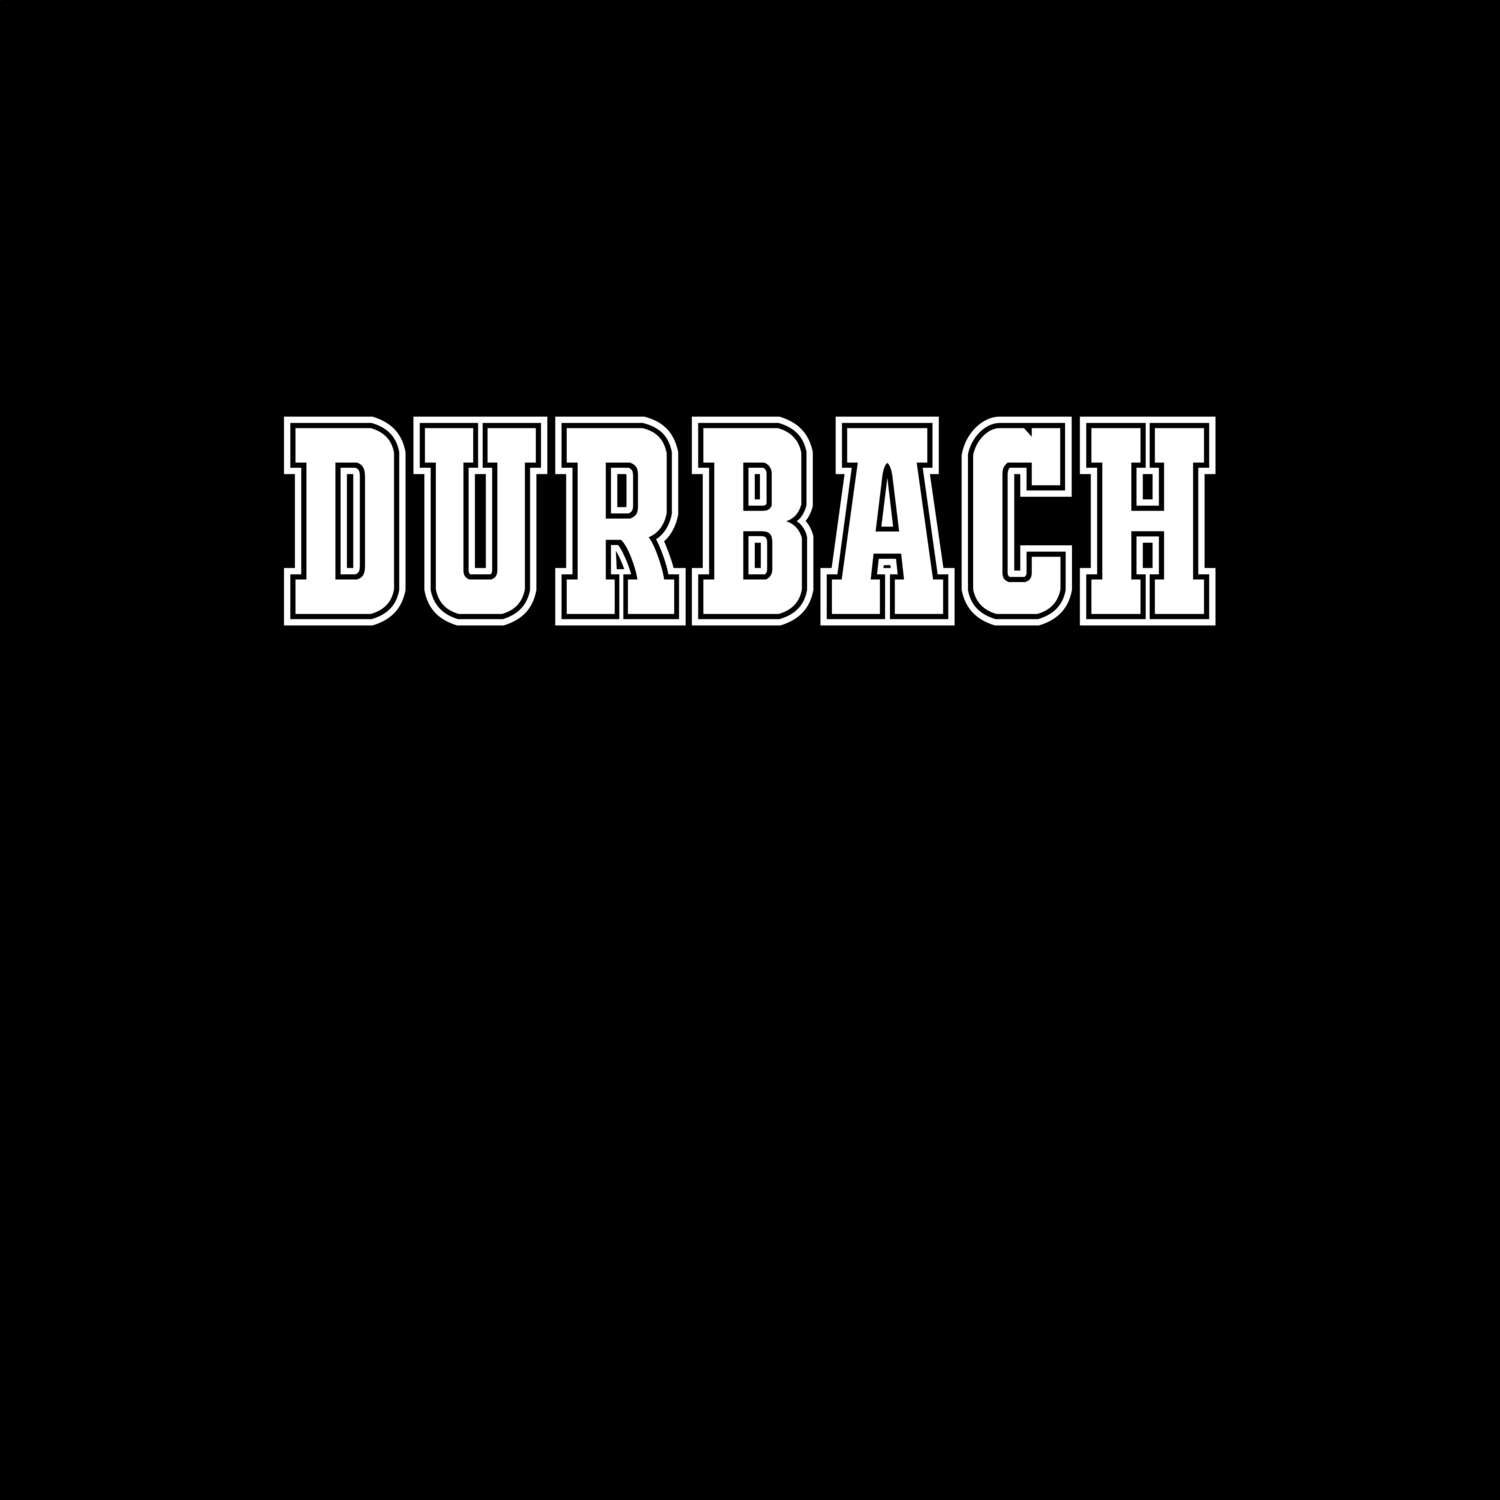 Durbach T-Shirt »Classic«